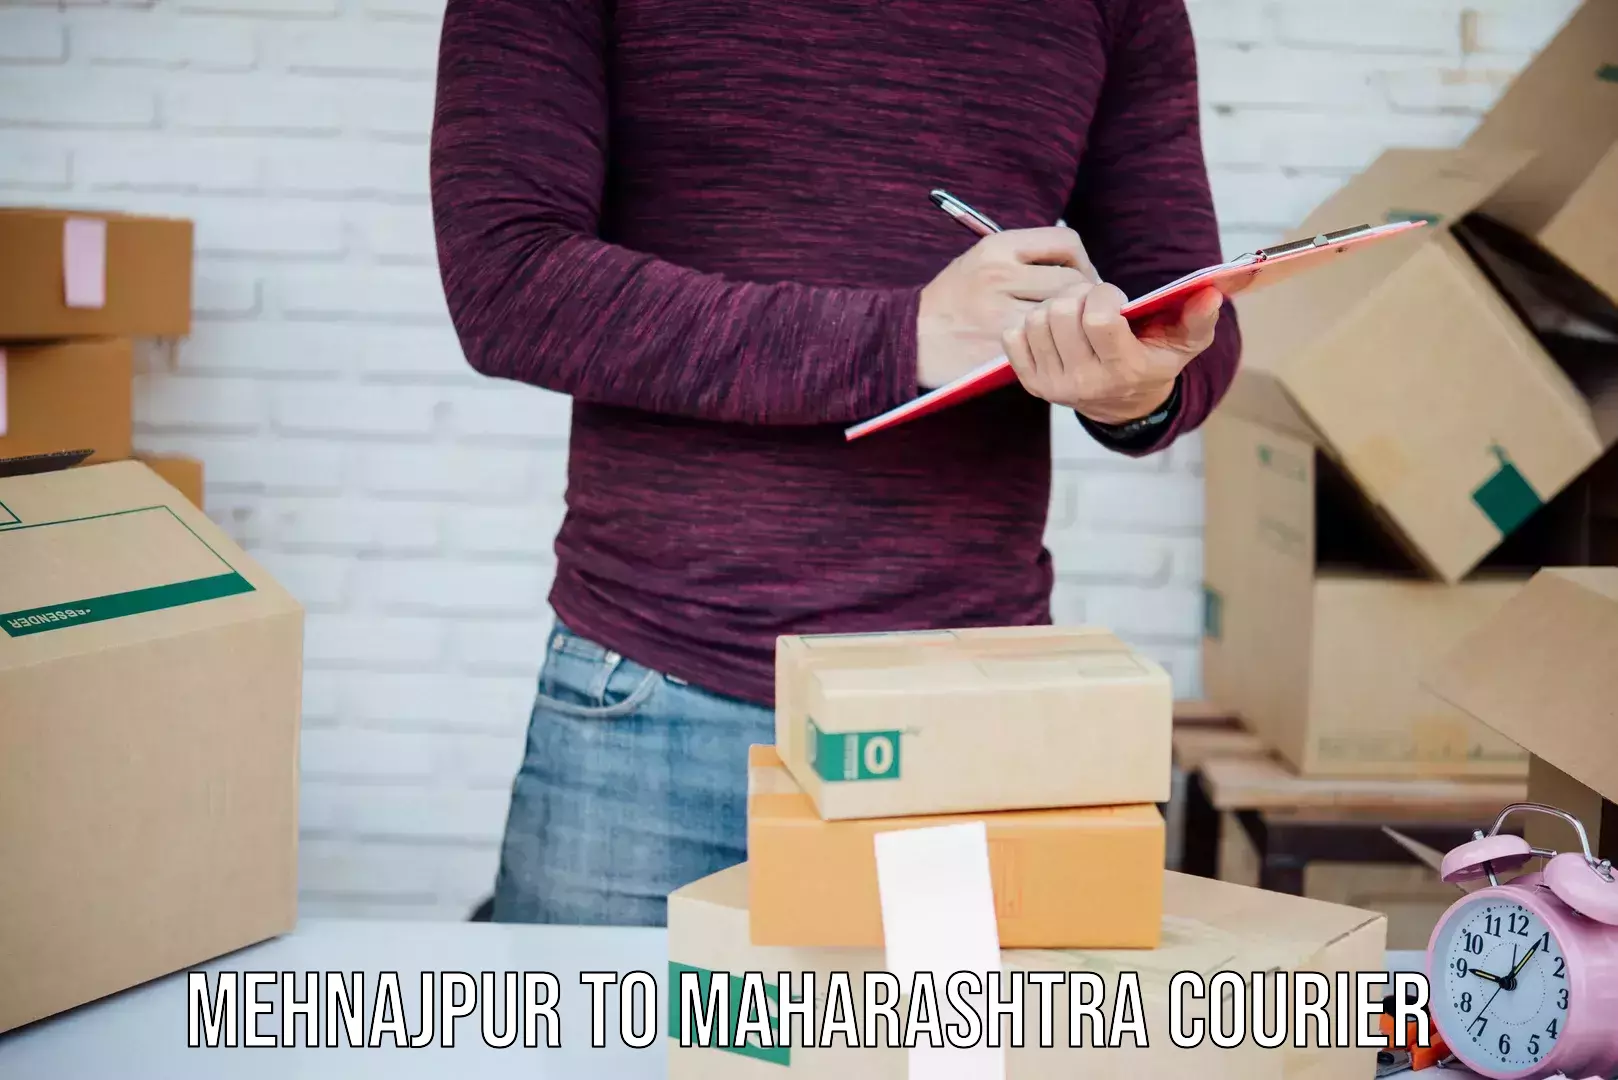 Efficient parcel service Mehnajpur to Nagpur